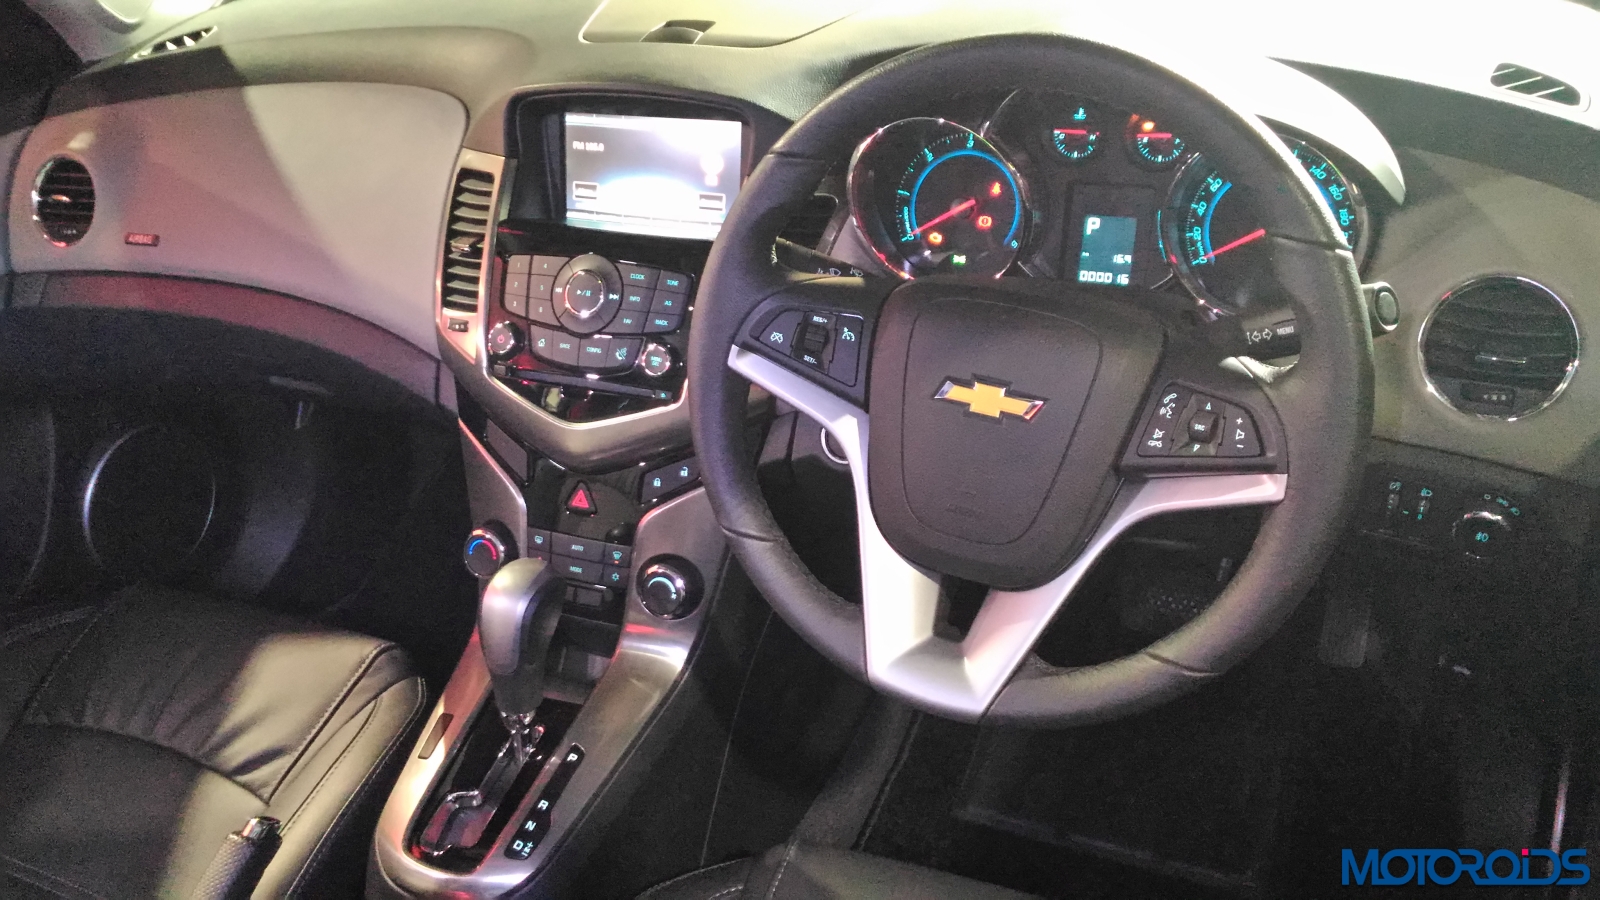 Chevrolet Cruze 2016 Auto Expo (12)